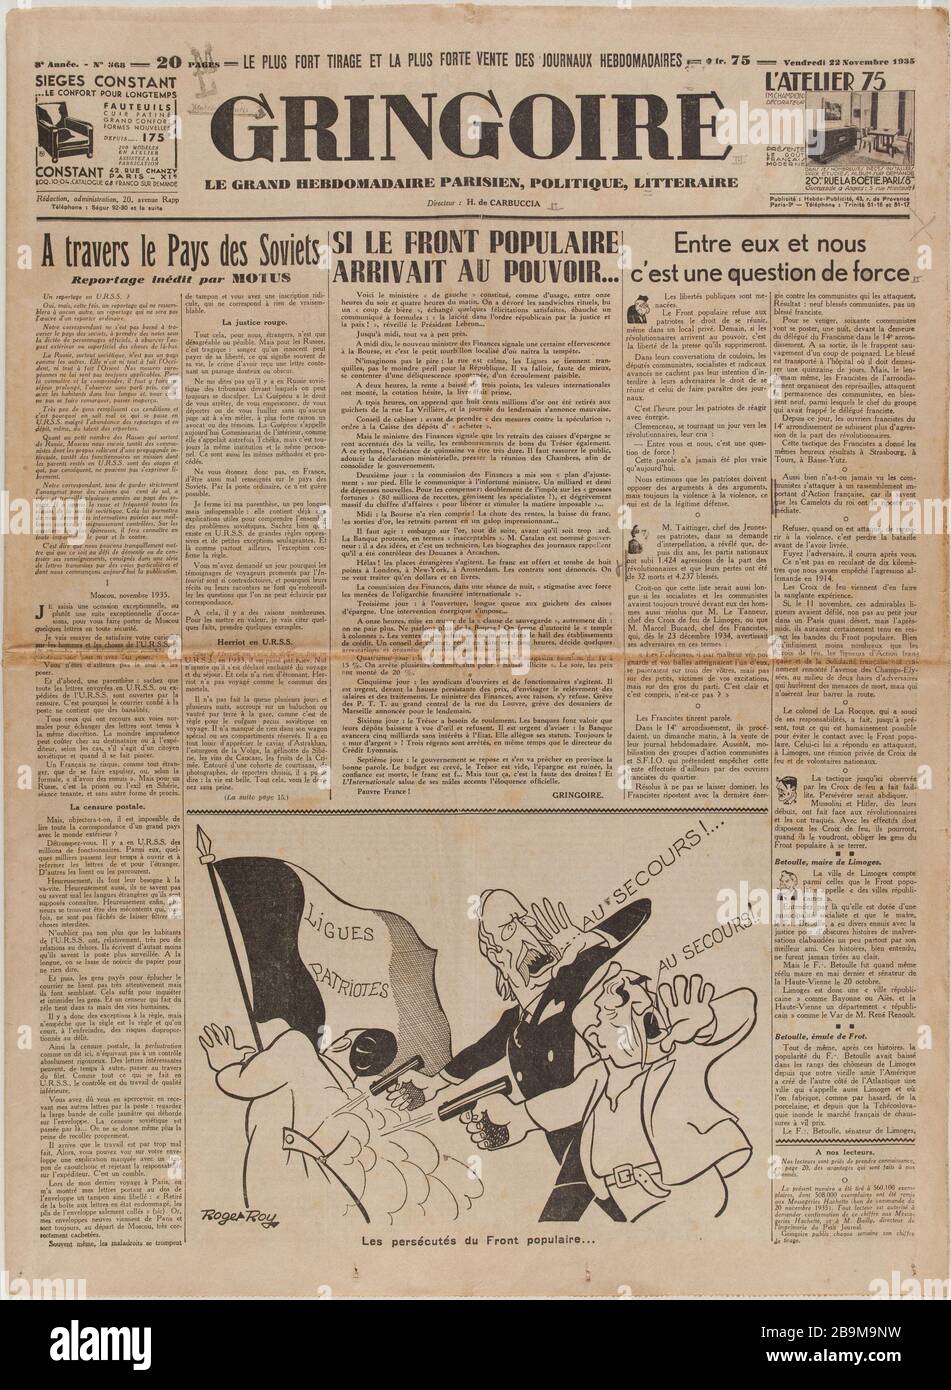 Newspaper 'Gringoire' of November 22, 1935 Journal 'Gringoire' du 22 novembre 1935. Papier imprimé, 1935. Musée du Général Leclerc de Hauteclocque et de la Libération de Paris, musée Jean Moulin. Stock Photo